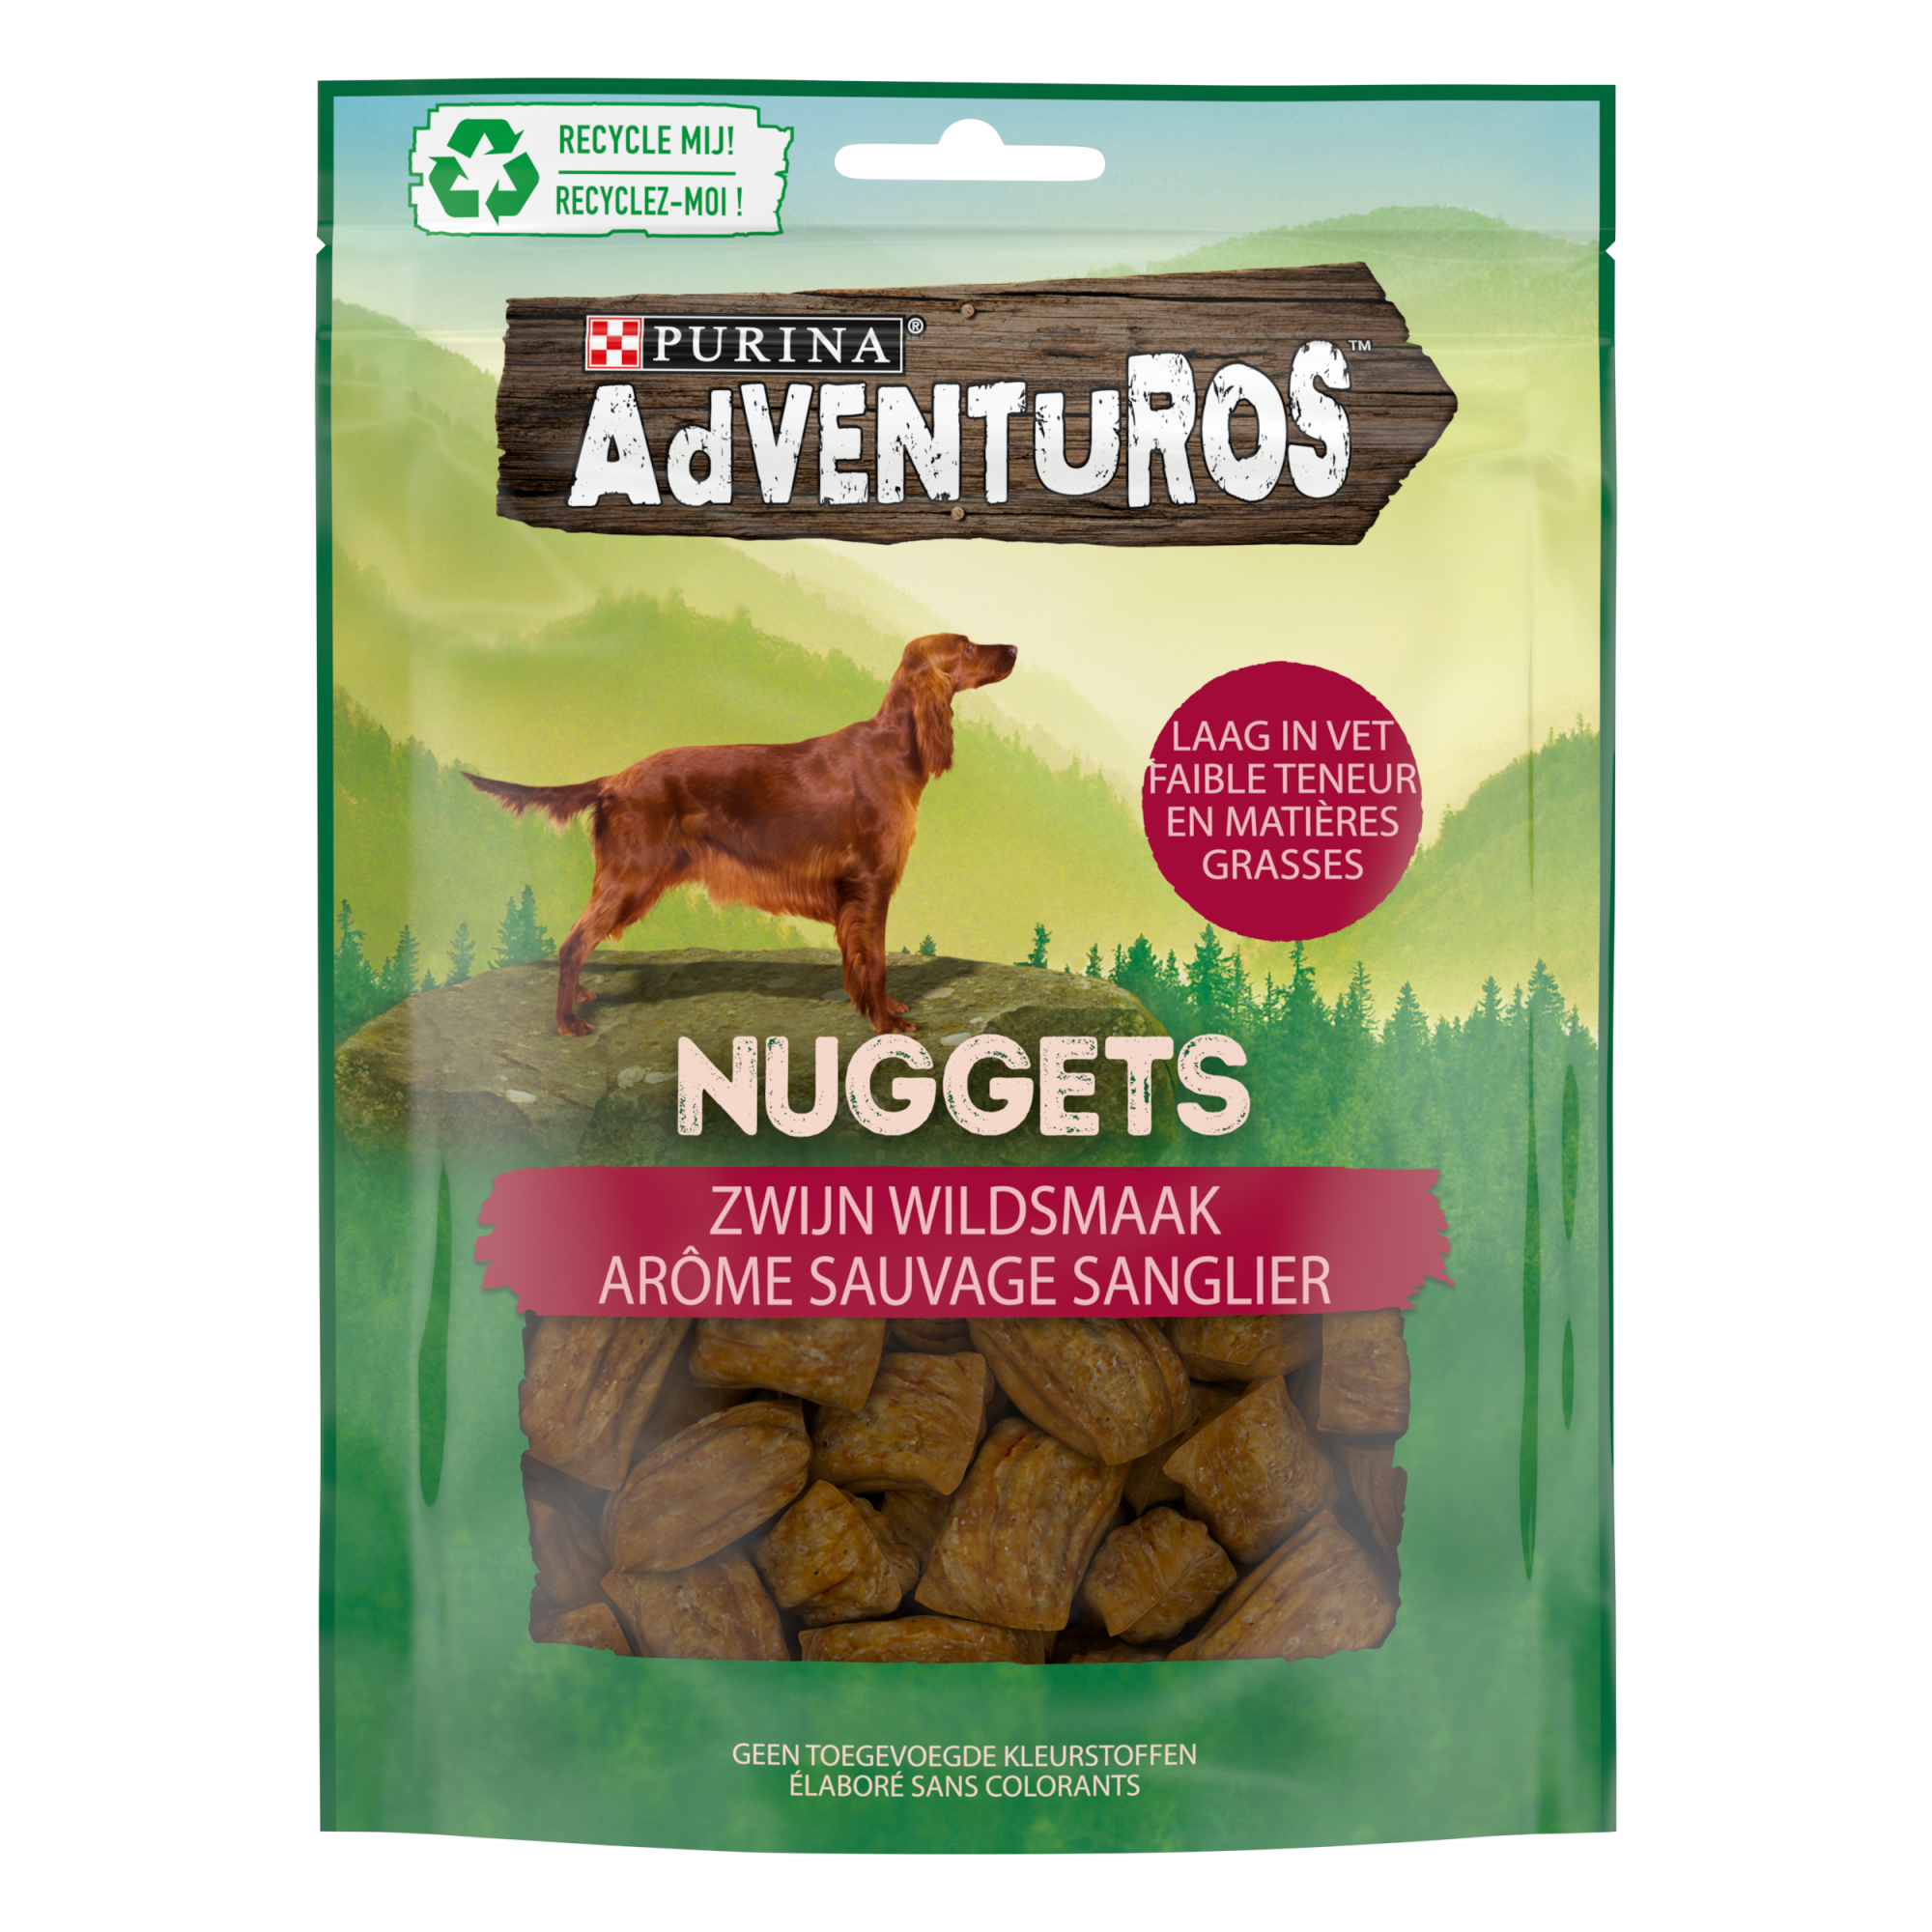 Adventuros guloseimas Nuggets aroma selvagem Javali para cães